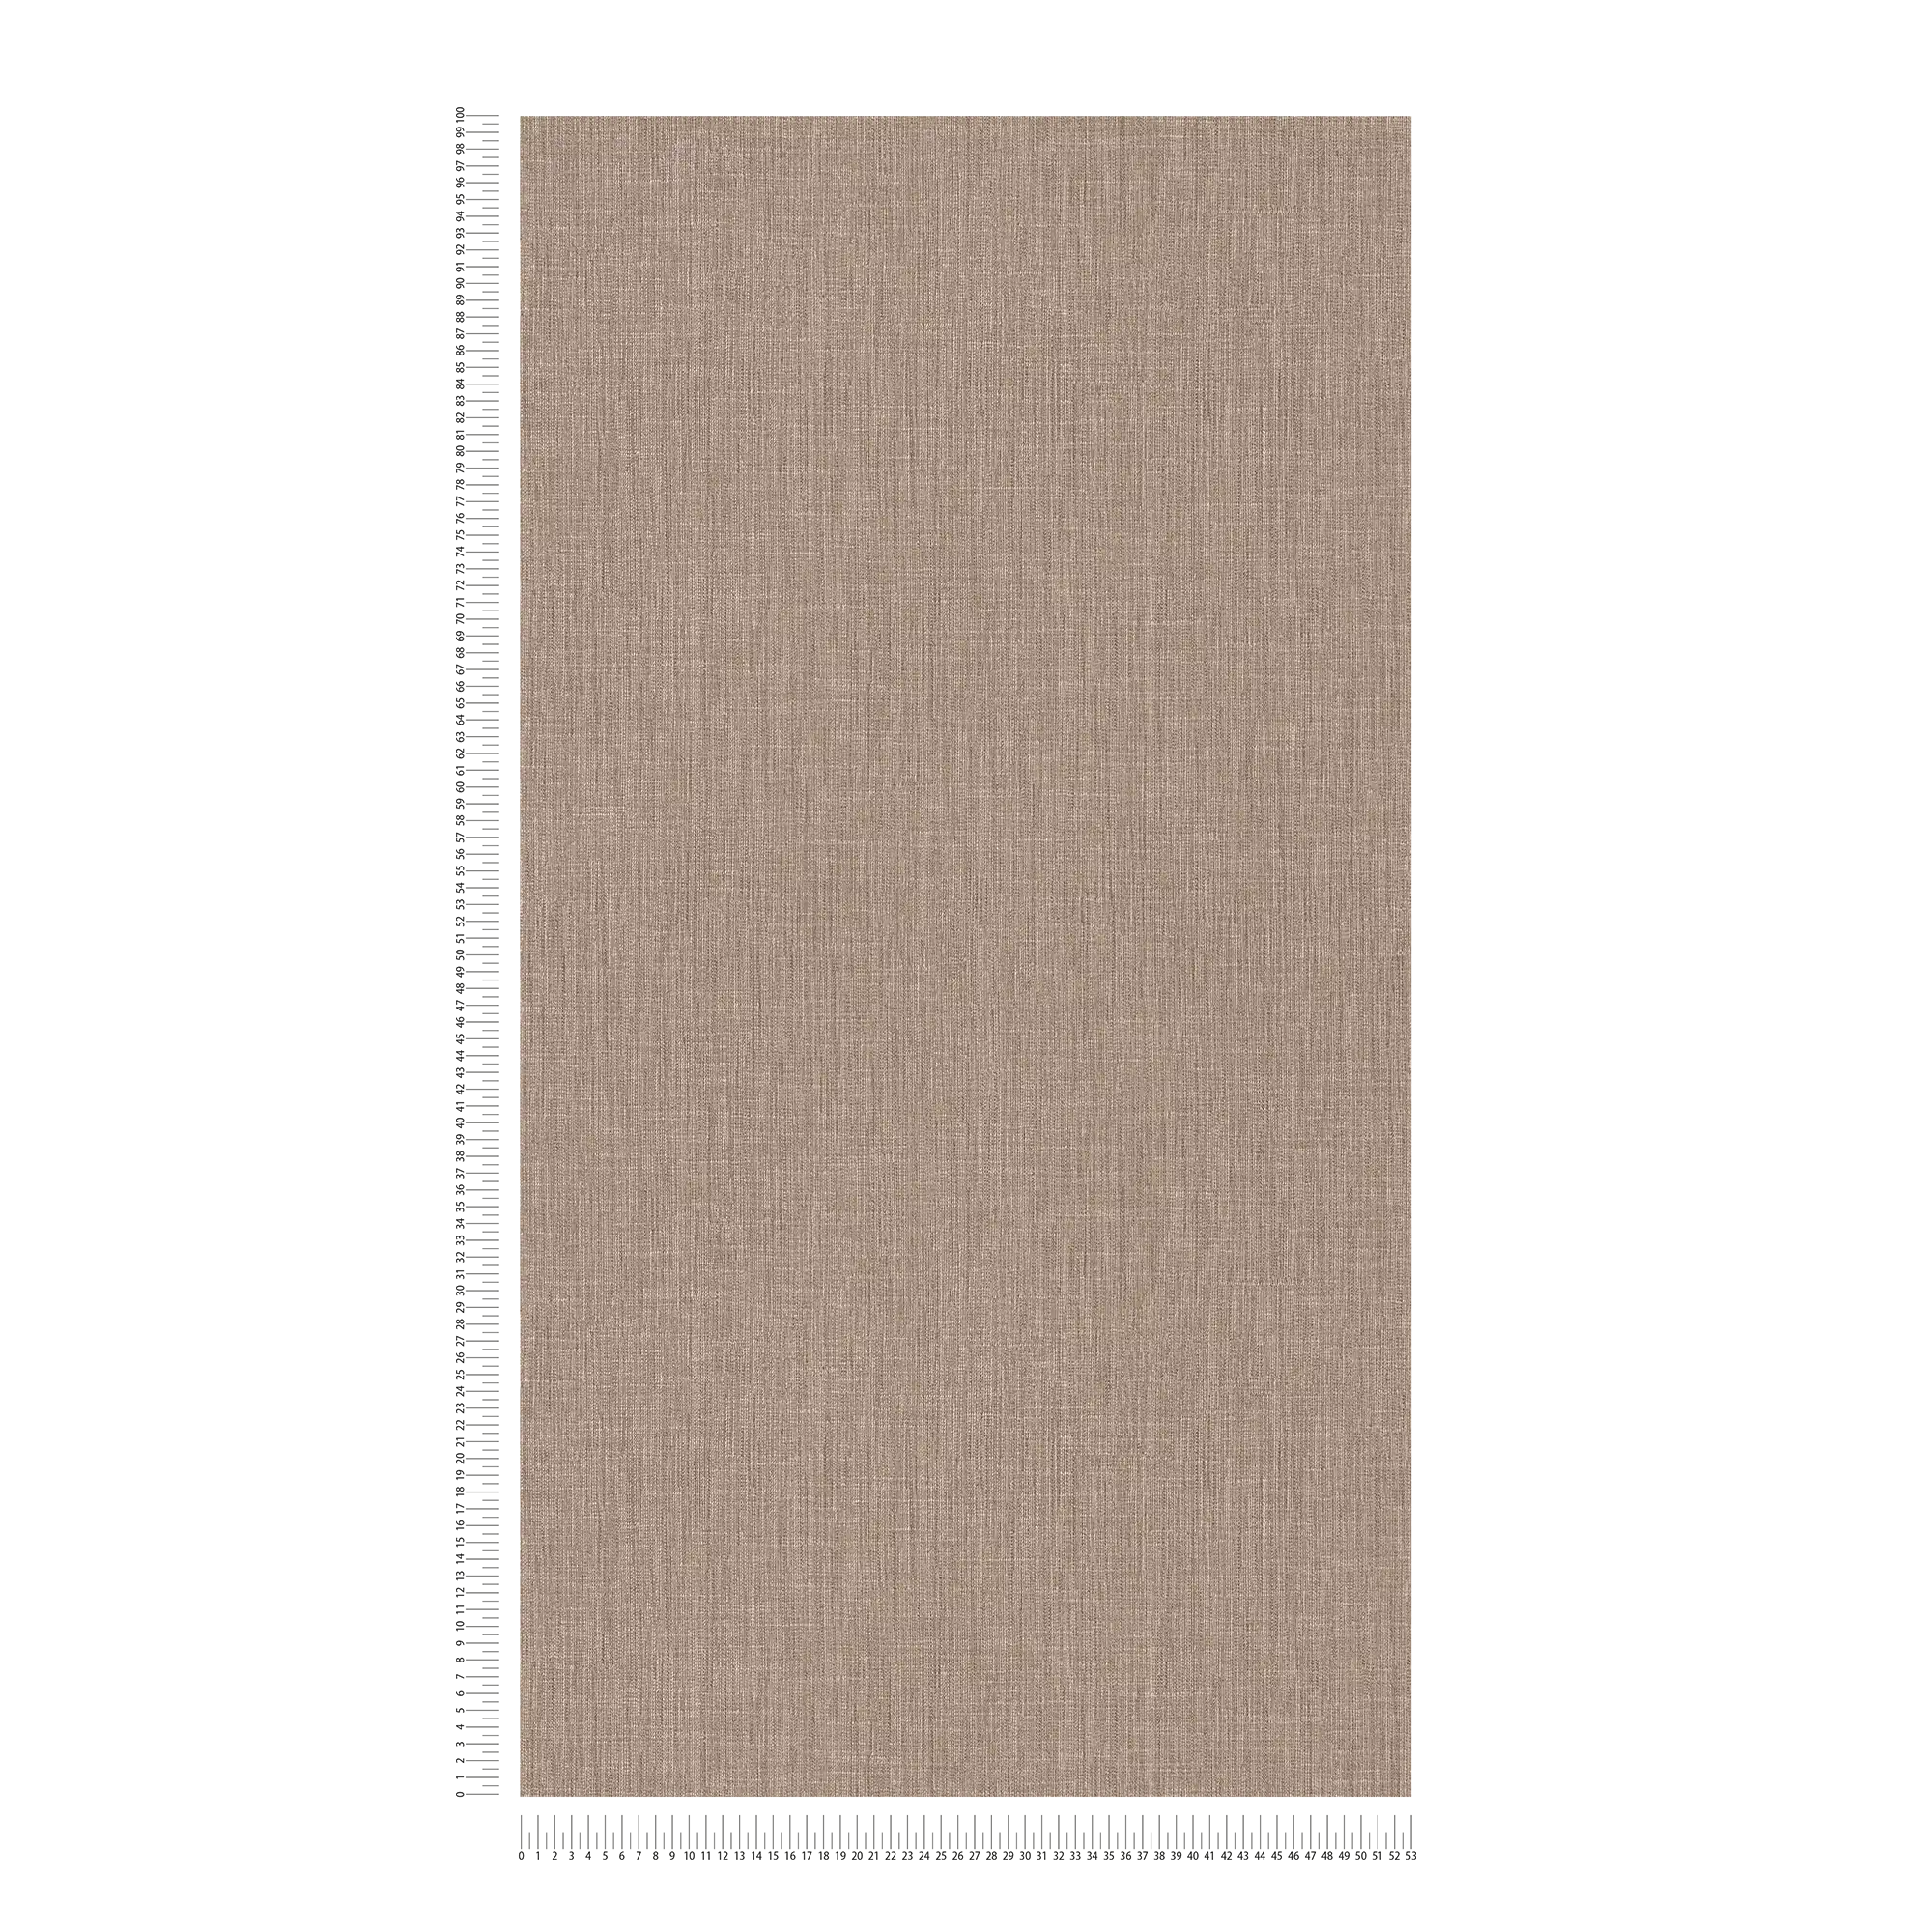             Carta da parati in tessuto non tessuto effetto lino con motivo tono su tono - marrone, crema
        